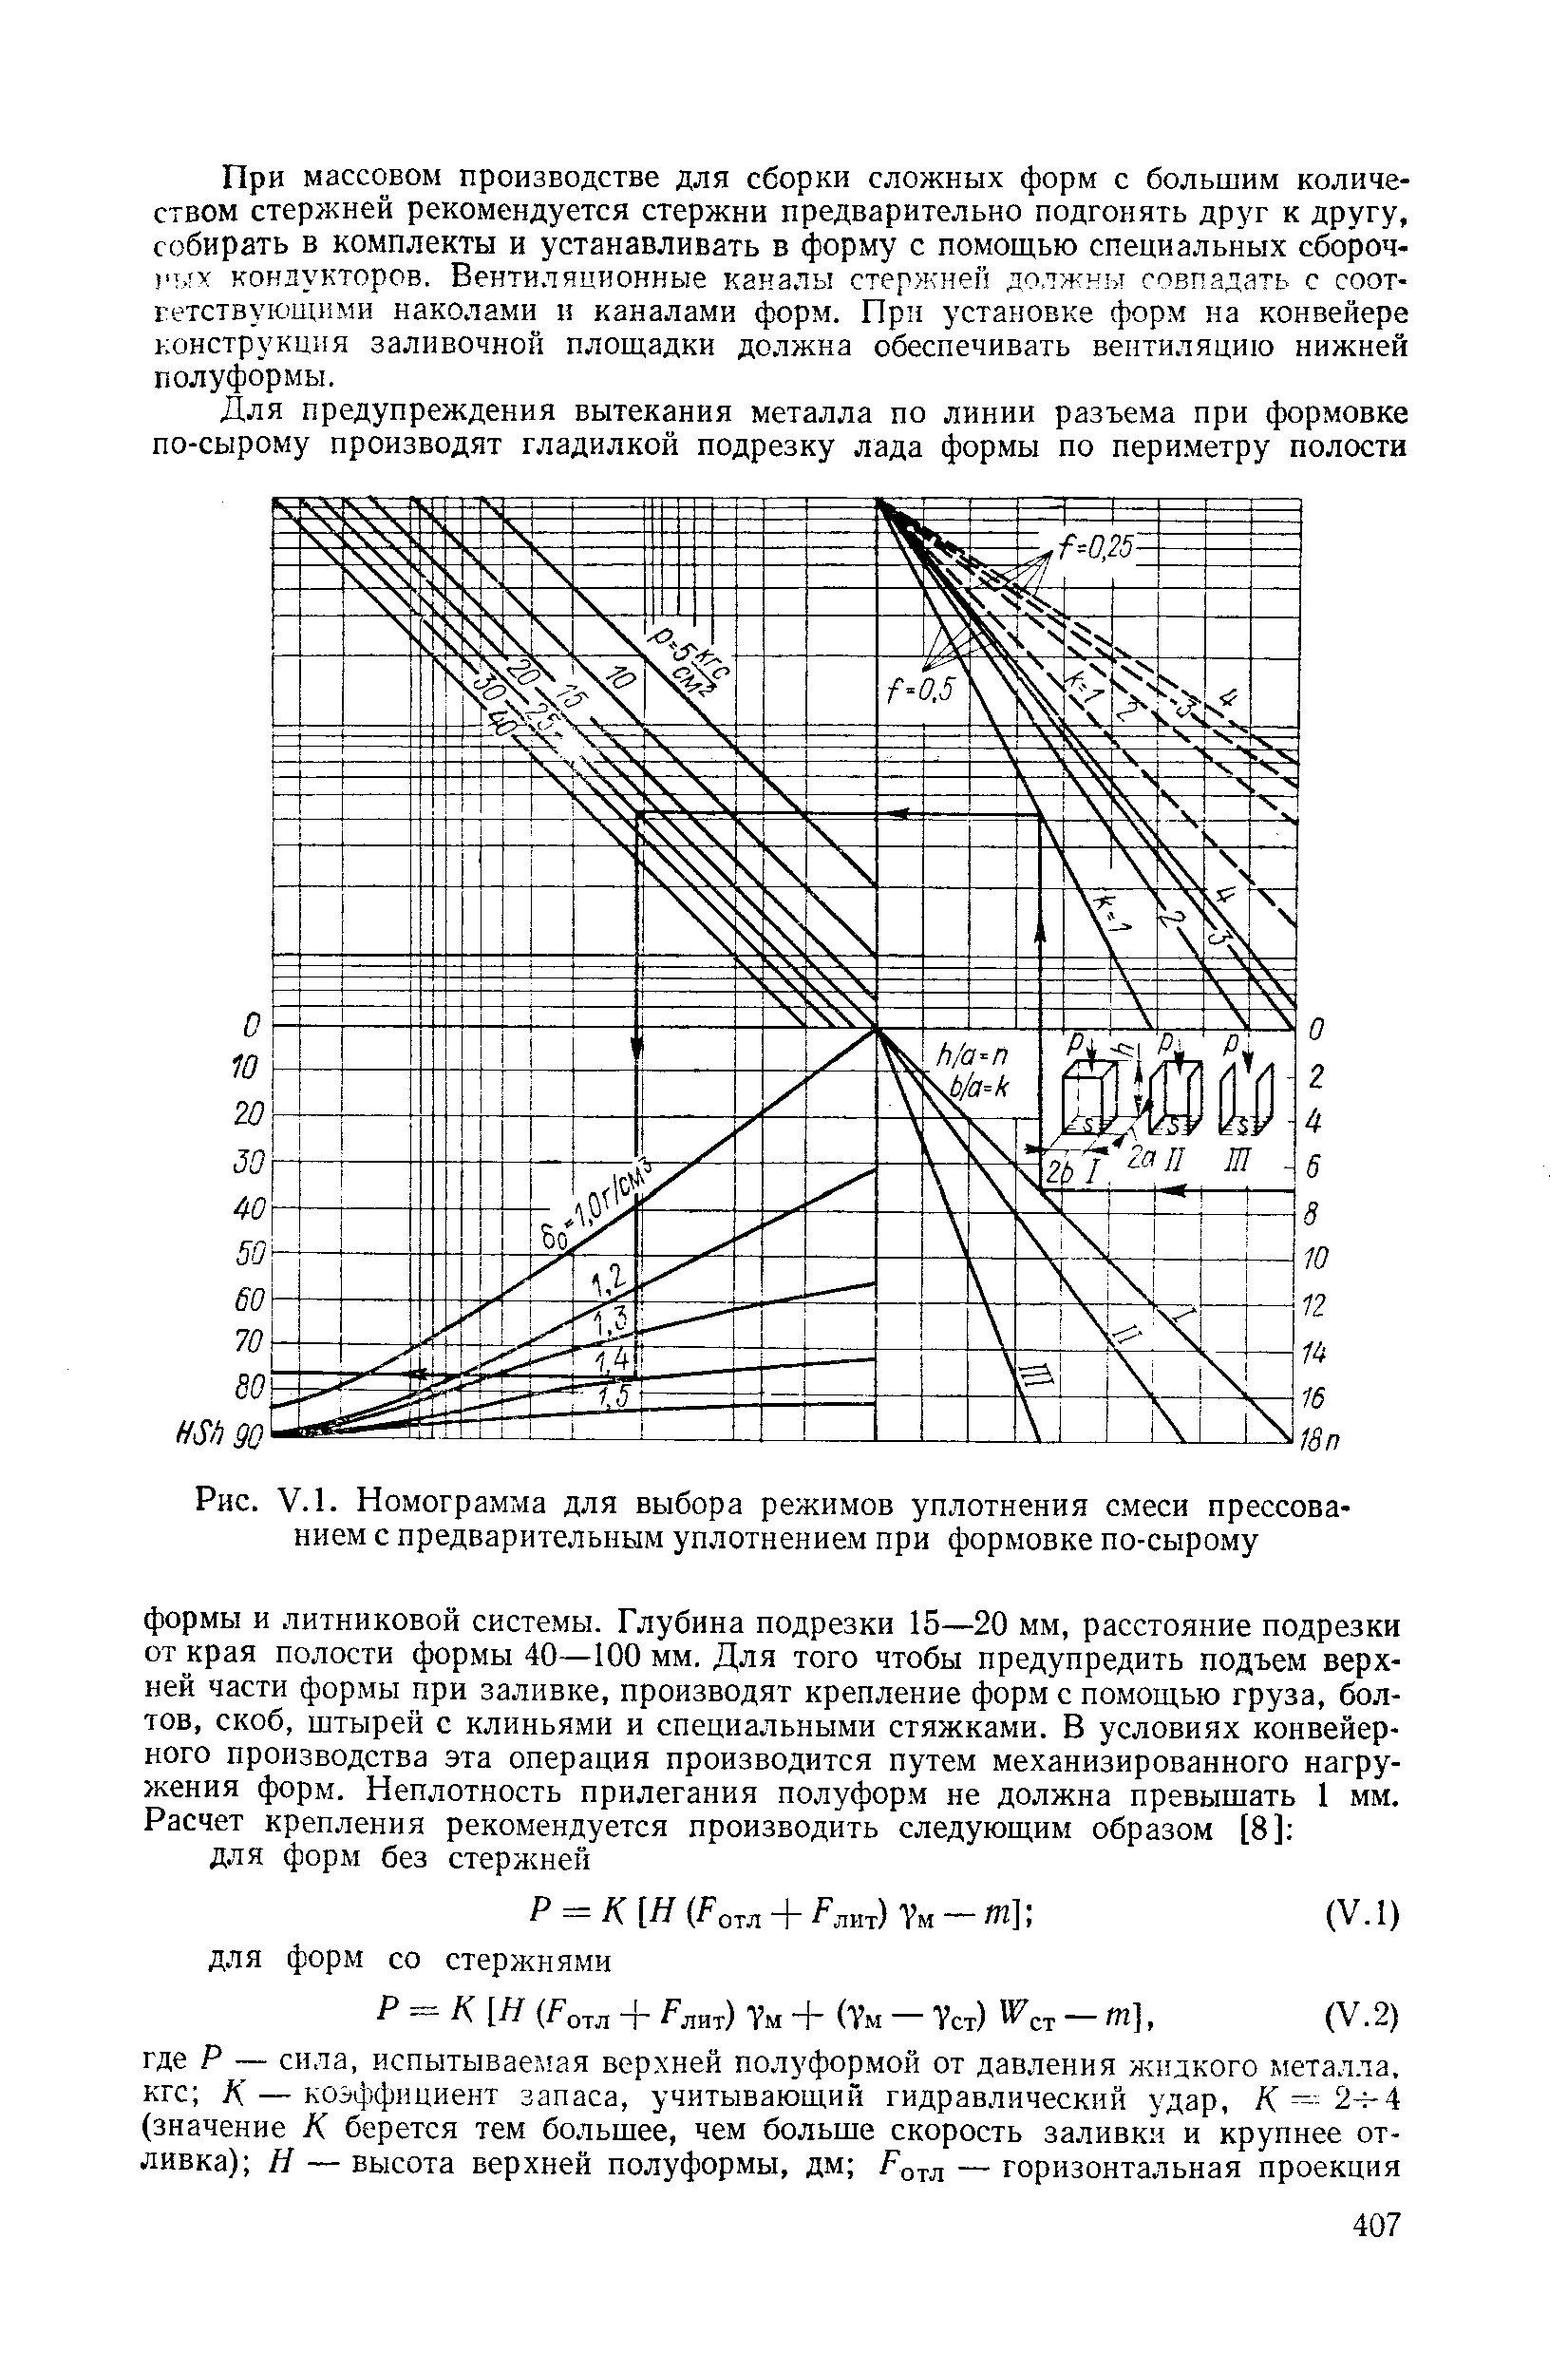 Рис. V.l. Номограмма для выбора режимов уплотнения смеси прессованием с предварительным уплотнением при формовке по-сырому
